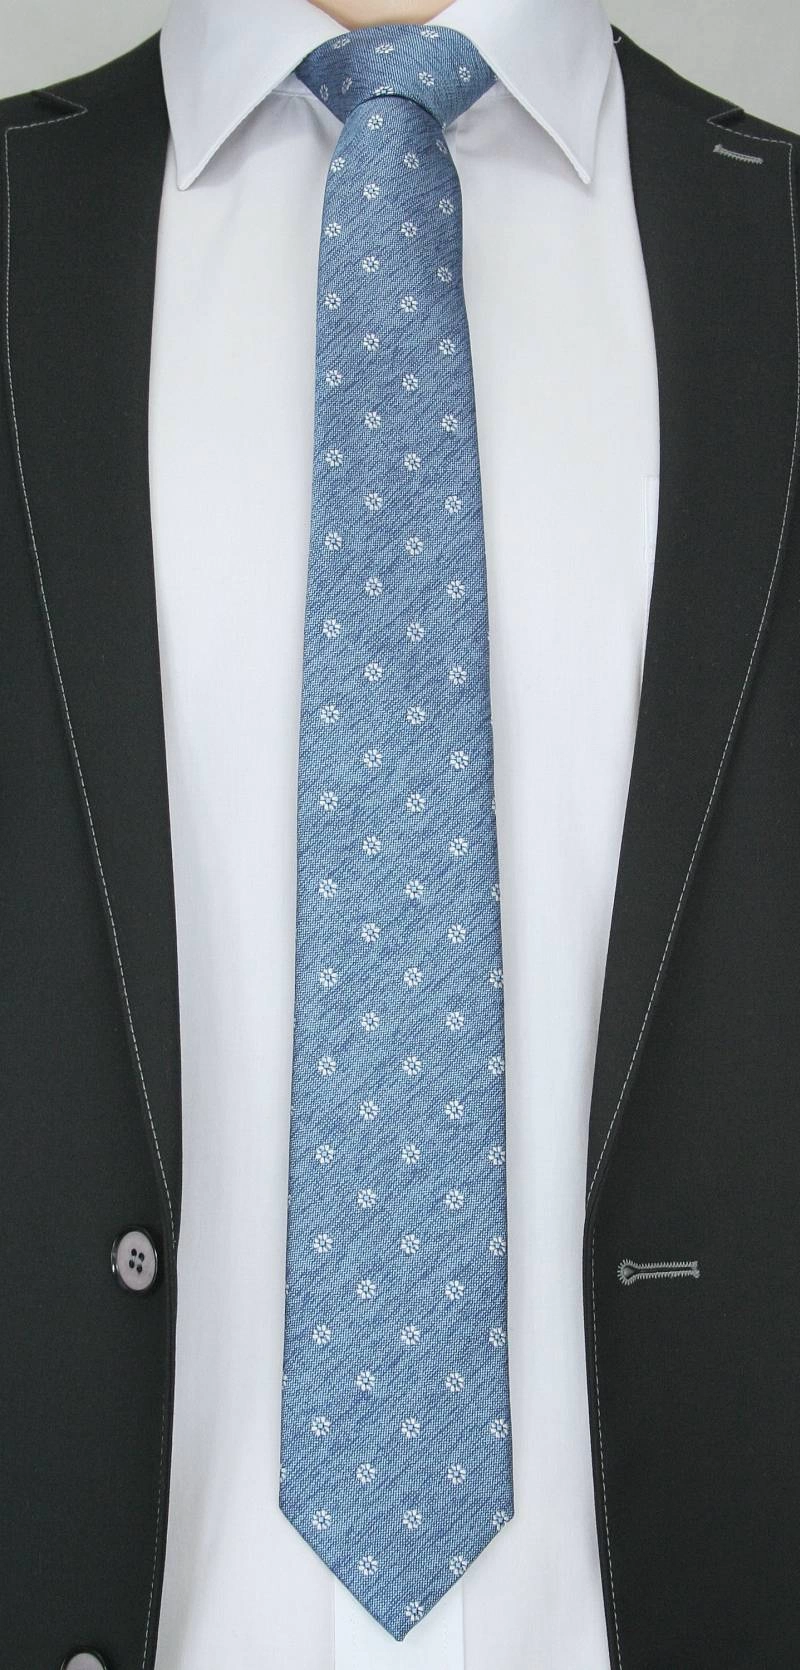 Modny Krawat Męski - Motyw Florystyczny -6,5cm- Chattier, Błękitno-Biały